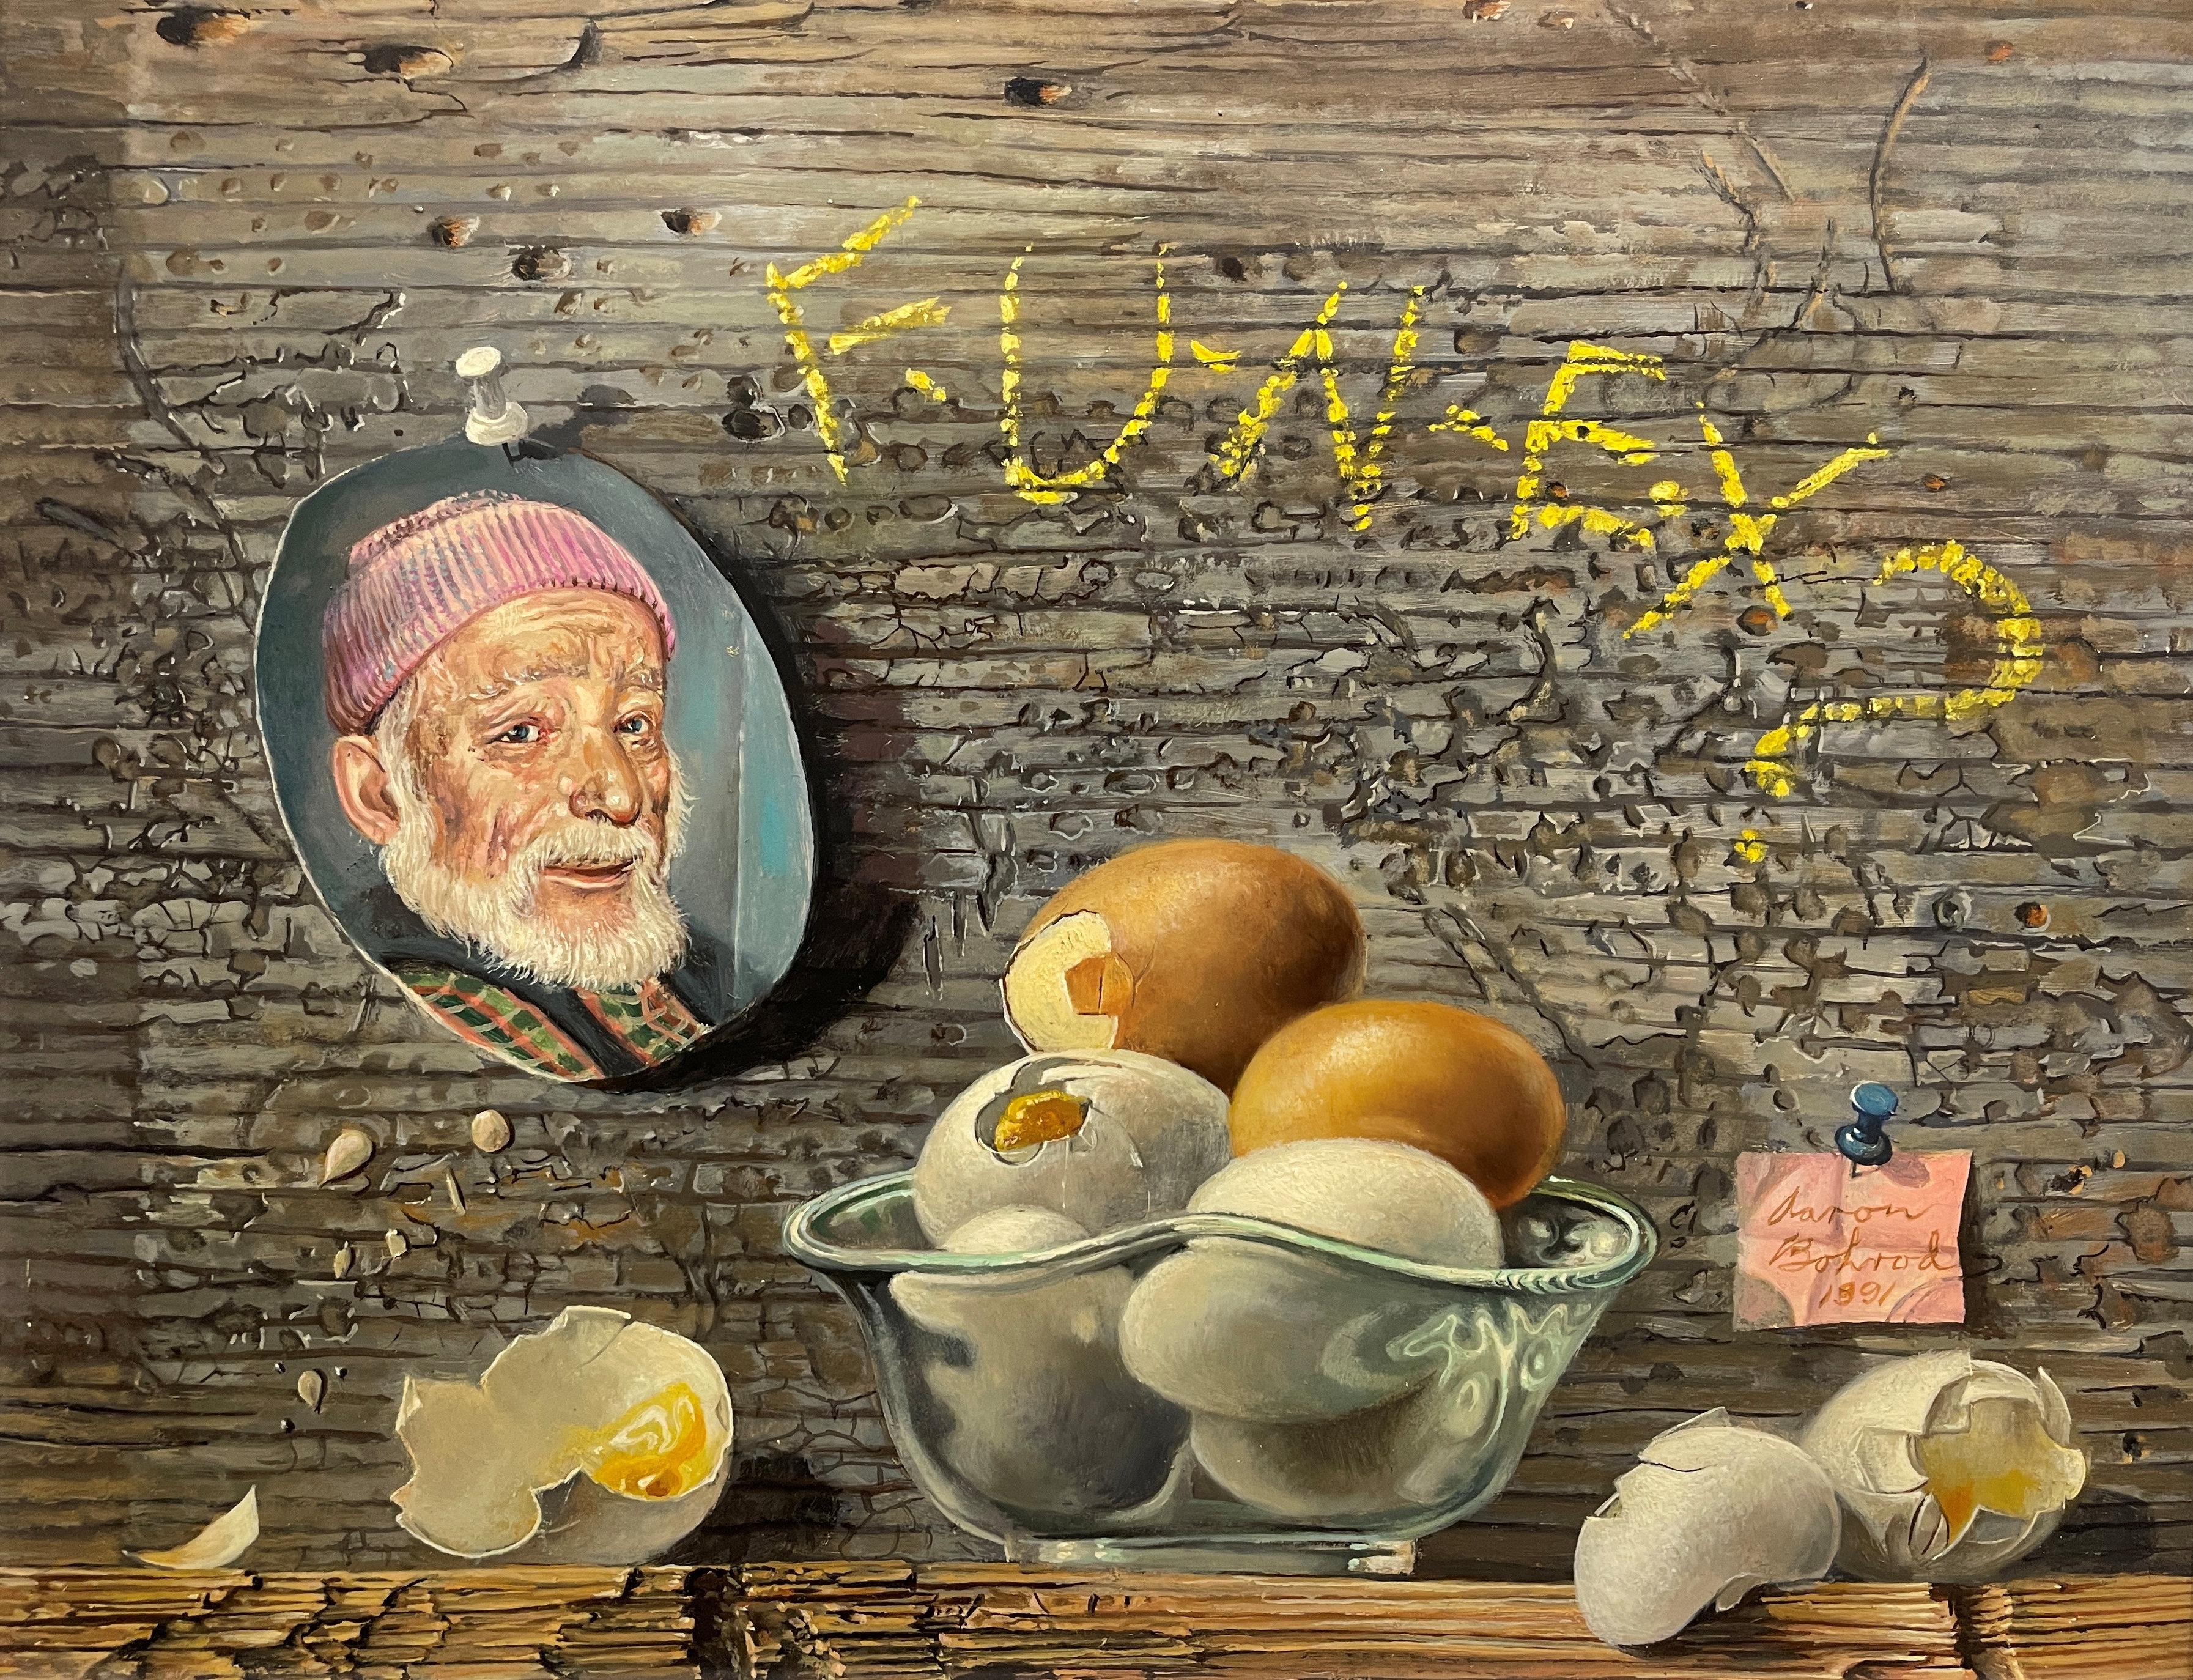 "The Egg and I" Aaron Bohrod, Pun Humor, Yiddish Joke, Realism